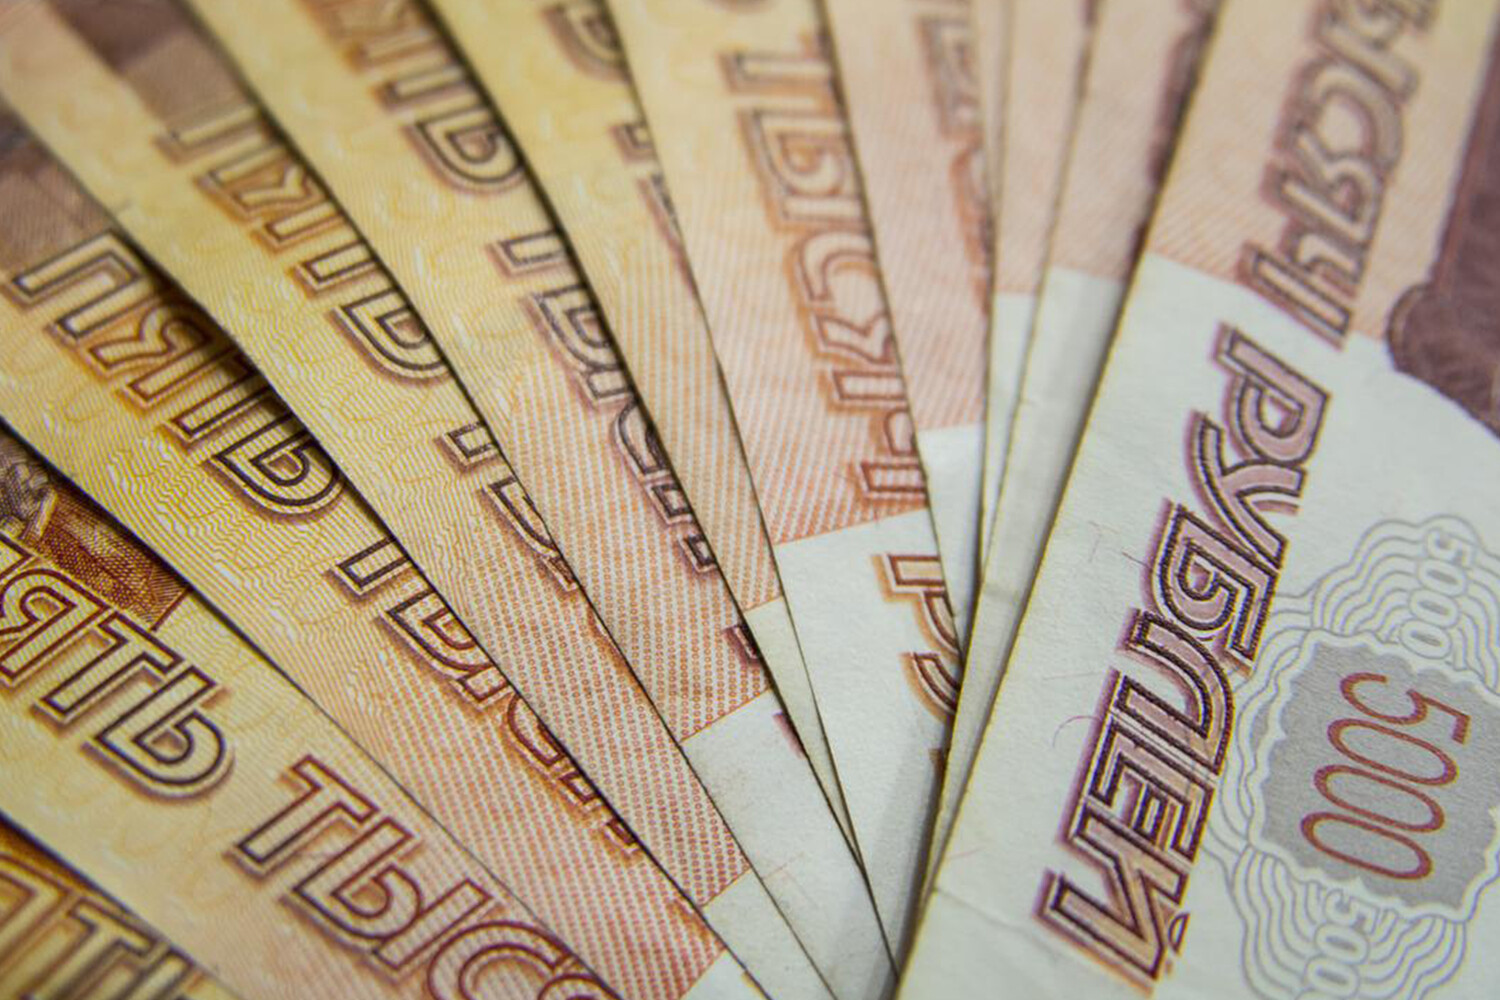 В Мурино мужчина надел знакомой пакет на голову ради 900 тысяч рублей